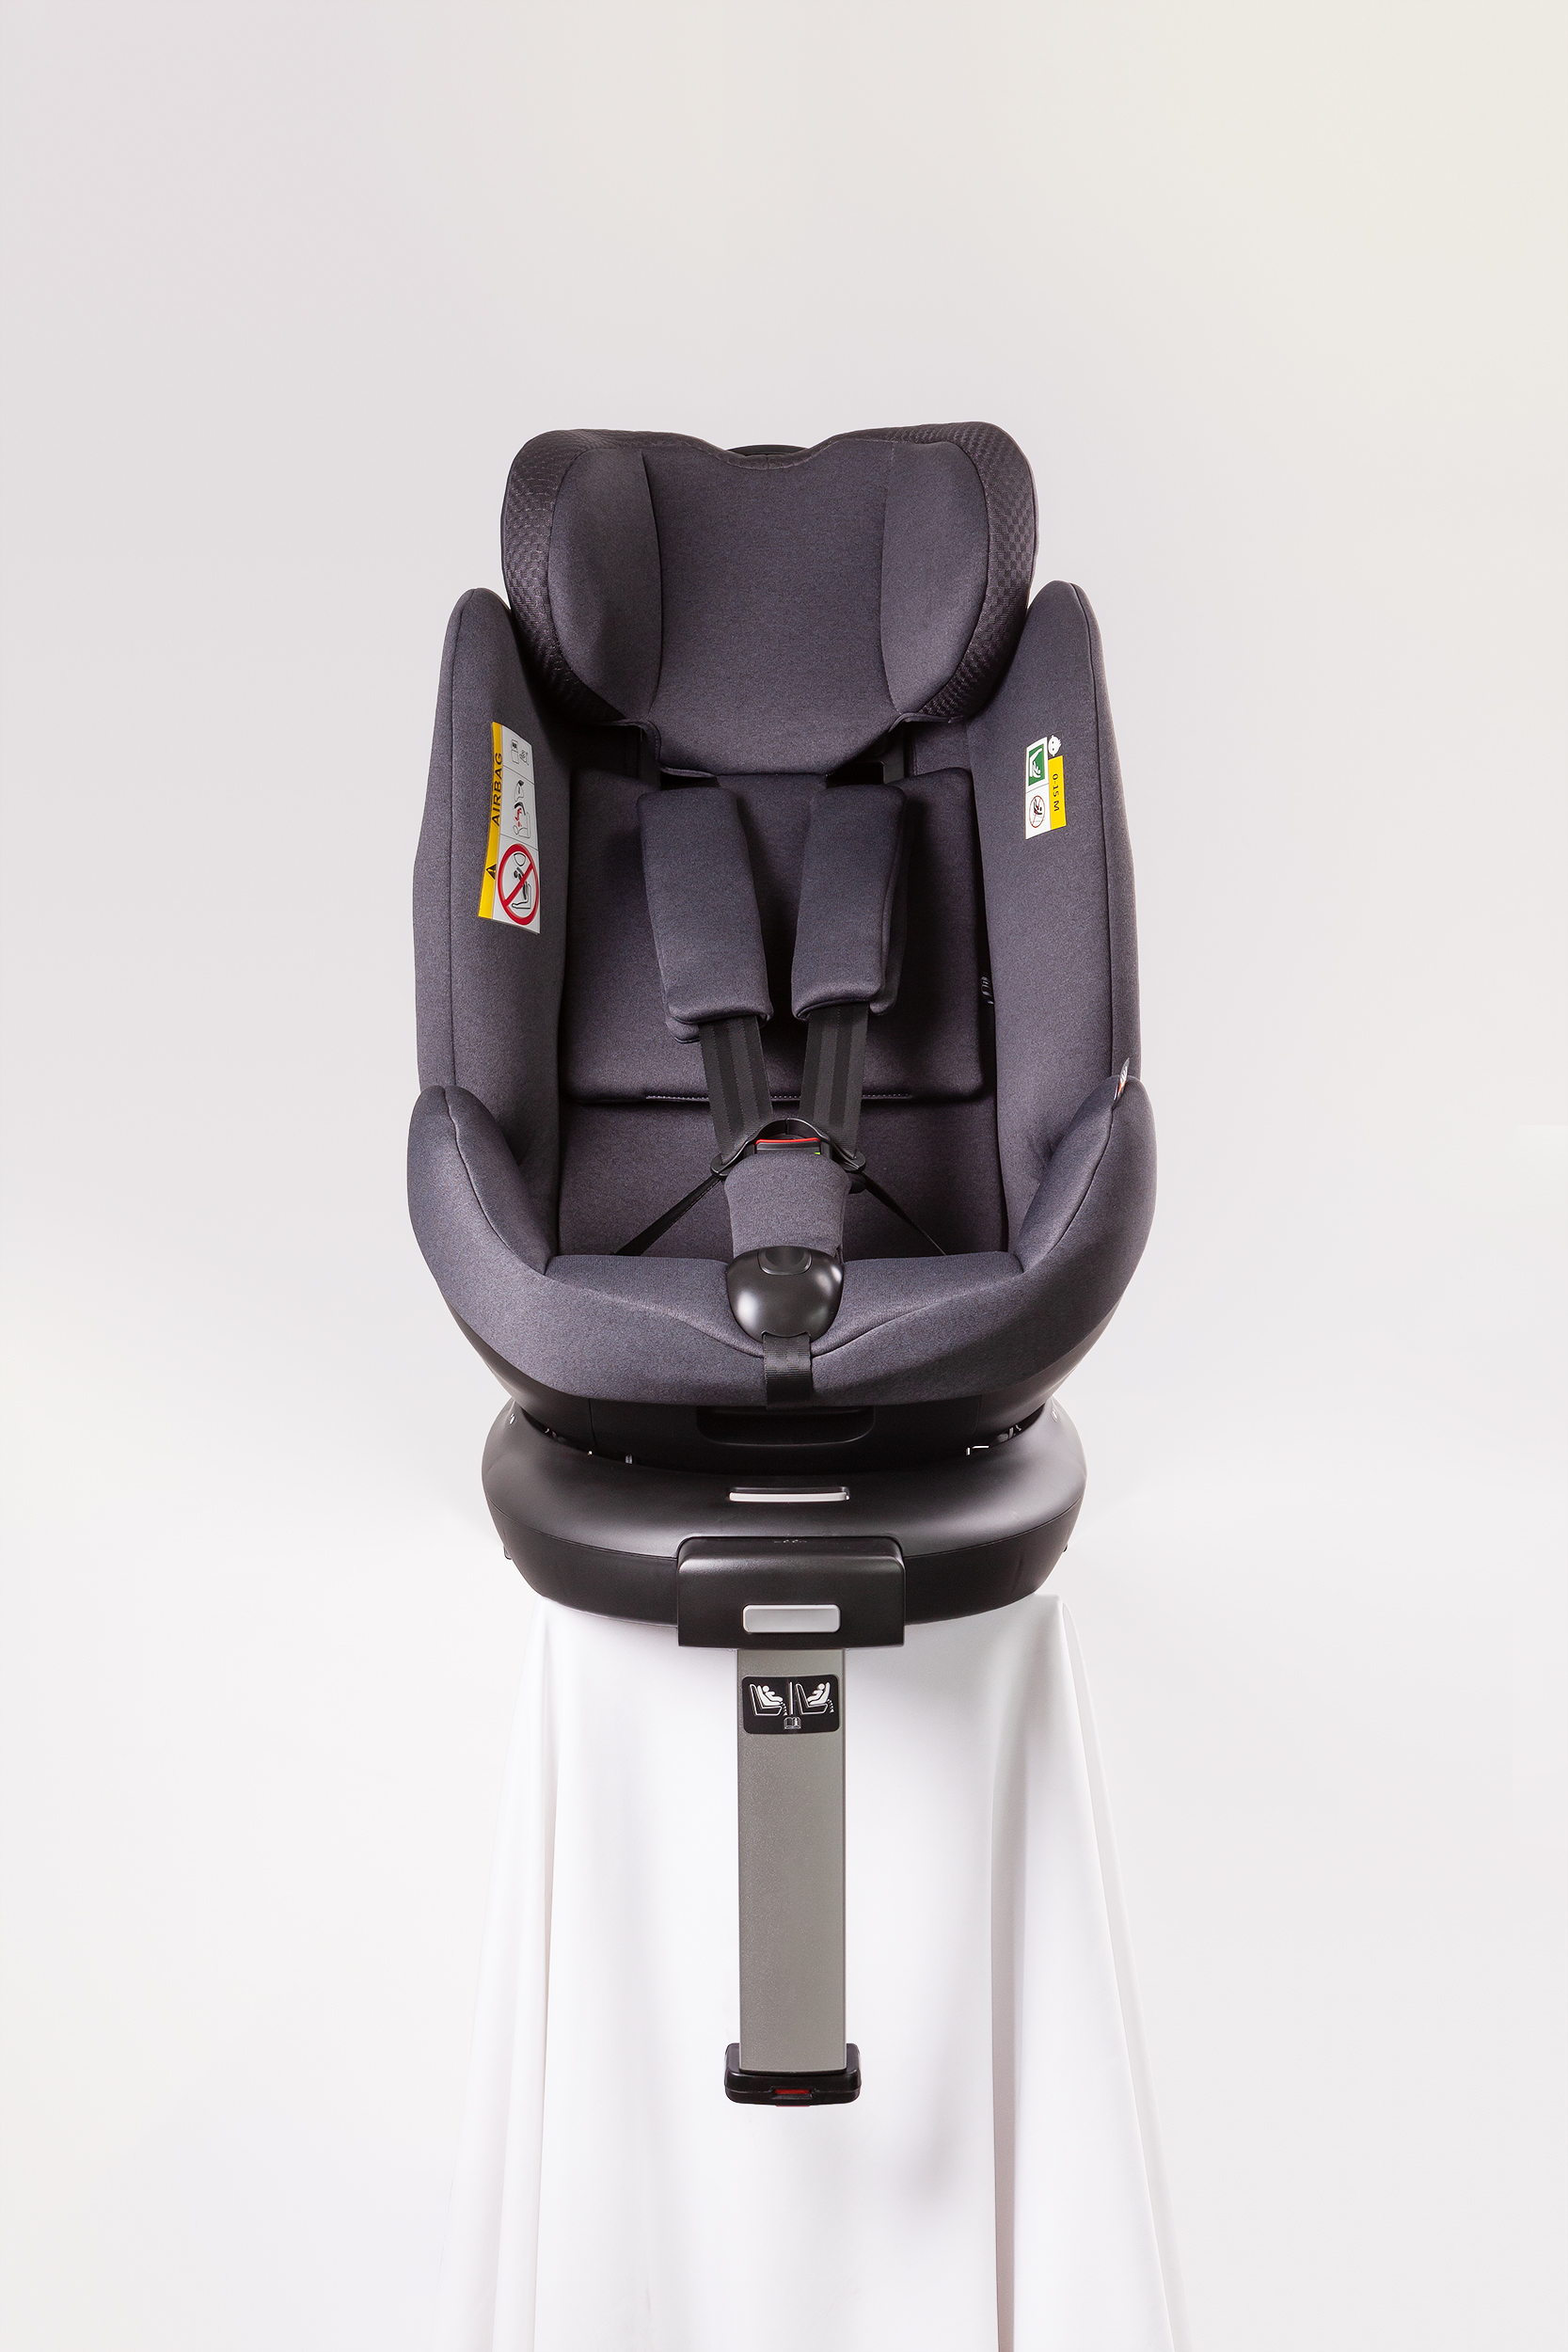 Brauner, um 360 Grad drehbarer Kinderautositz für 2-Jährige